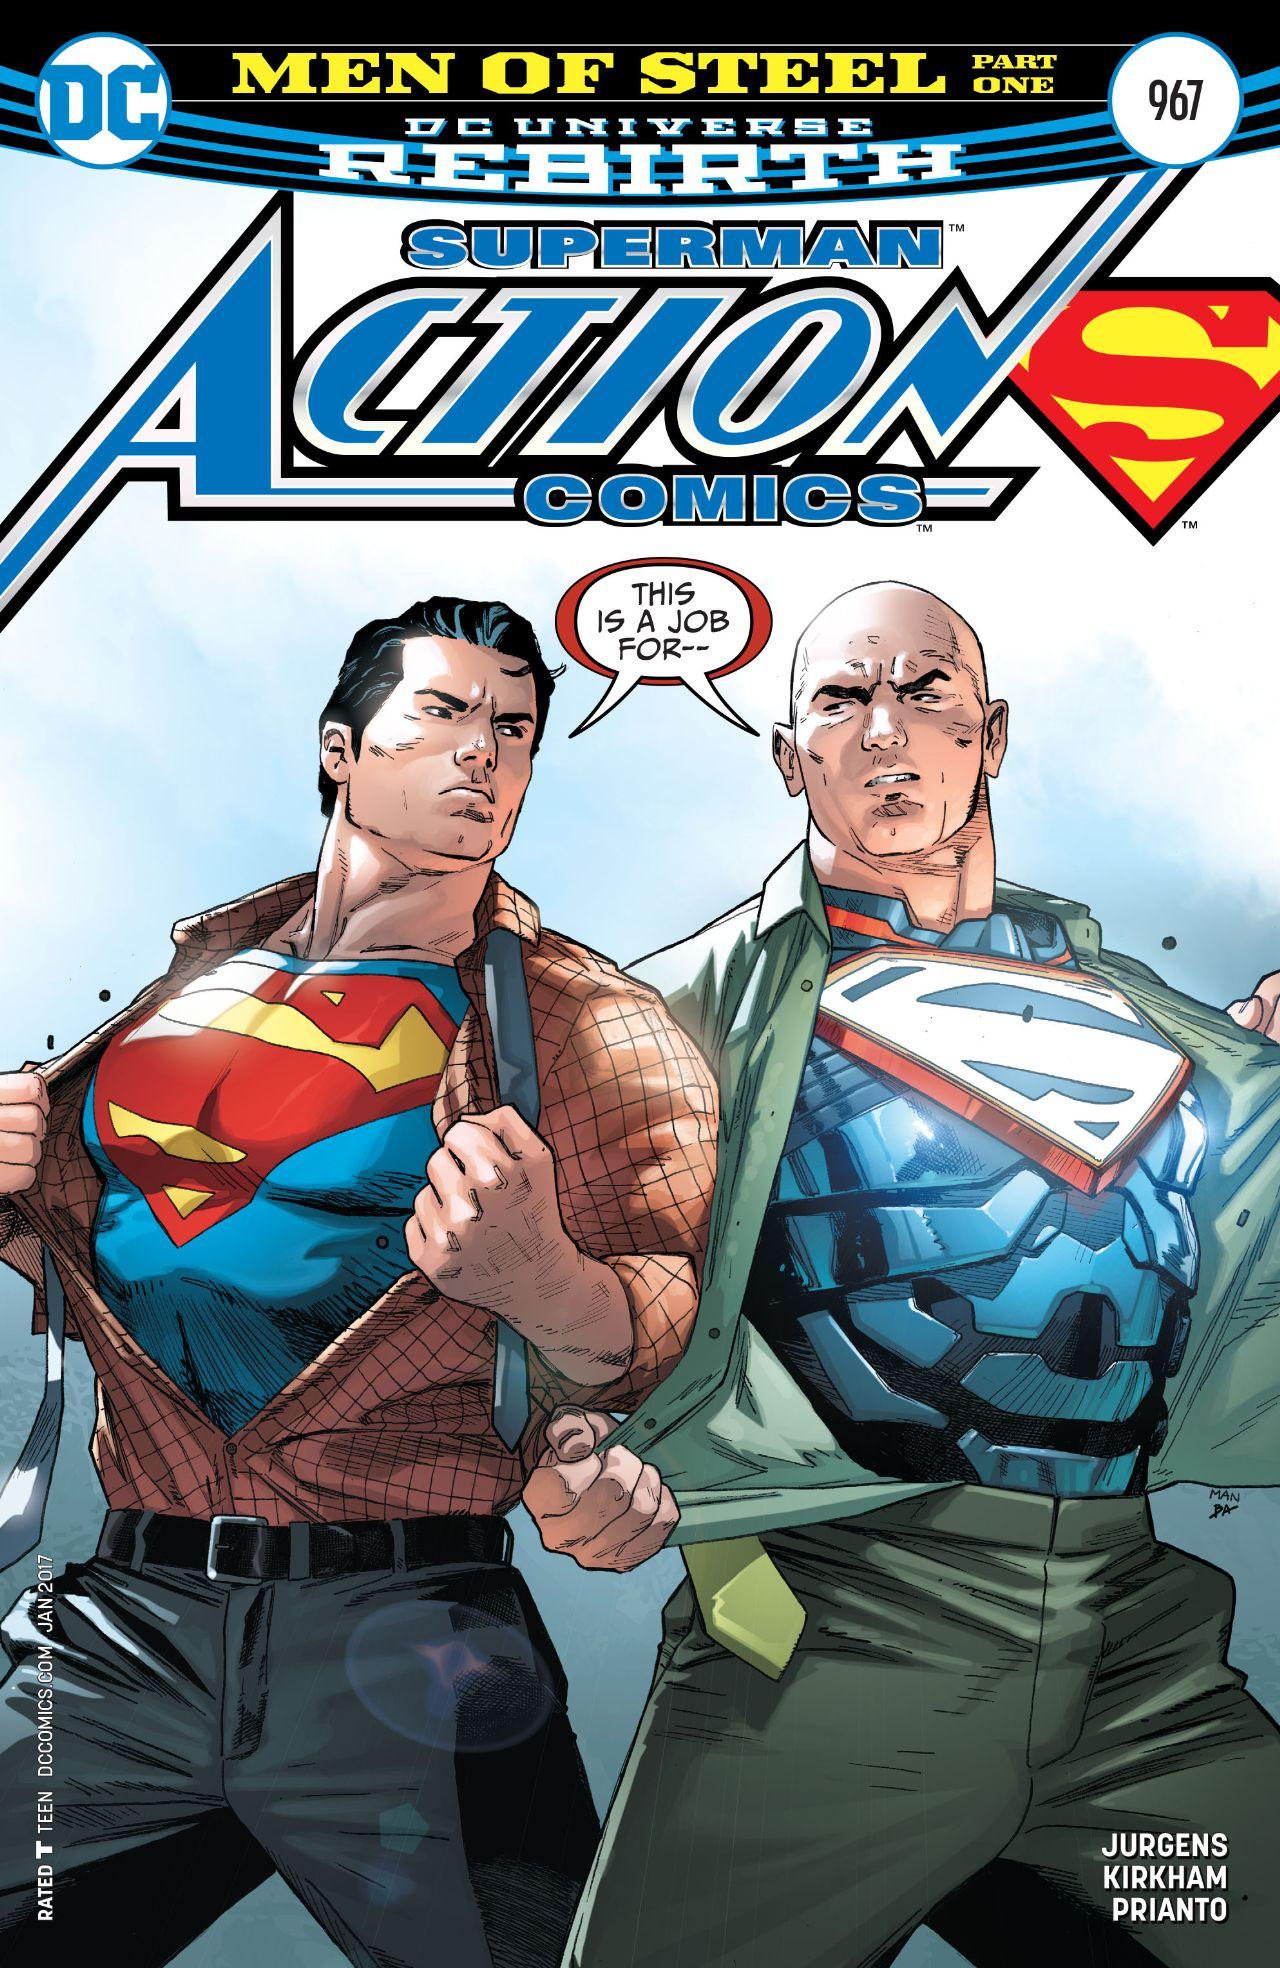 Action Comics Vol. 1 #967